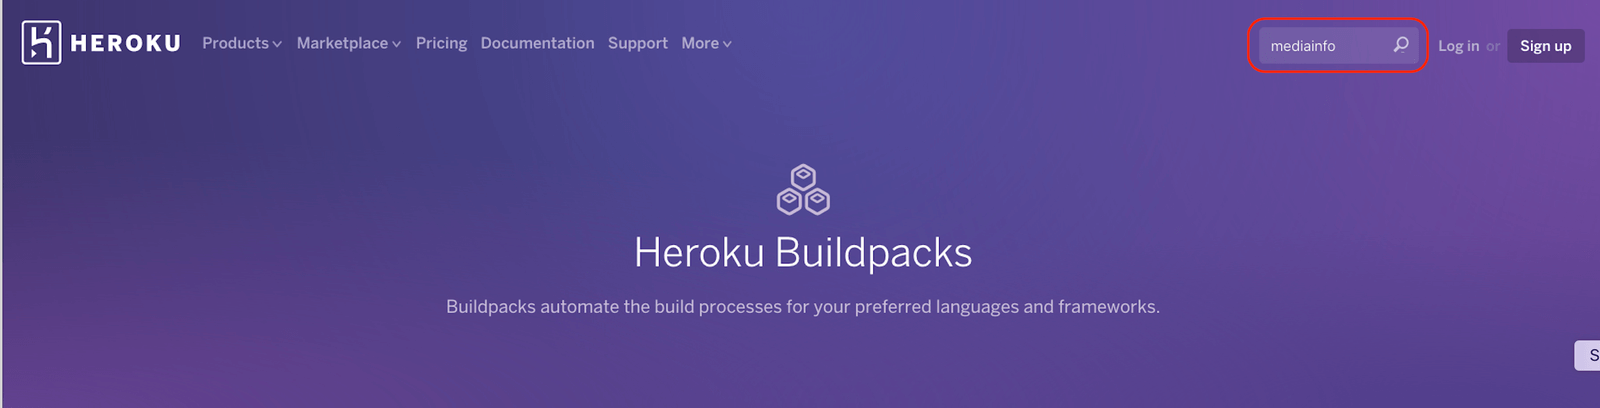 Search Heroku Buildpacks